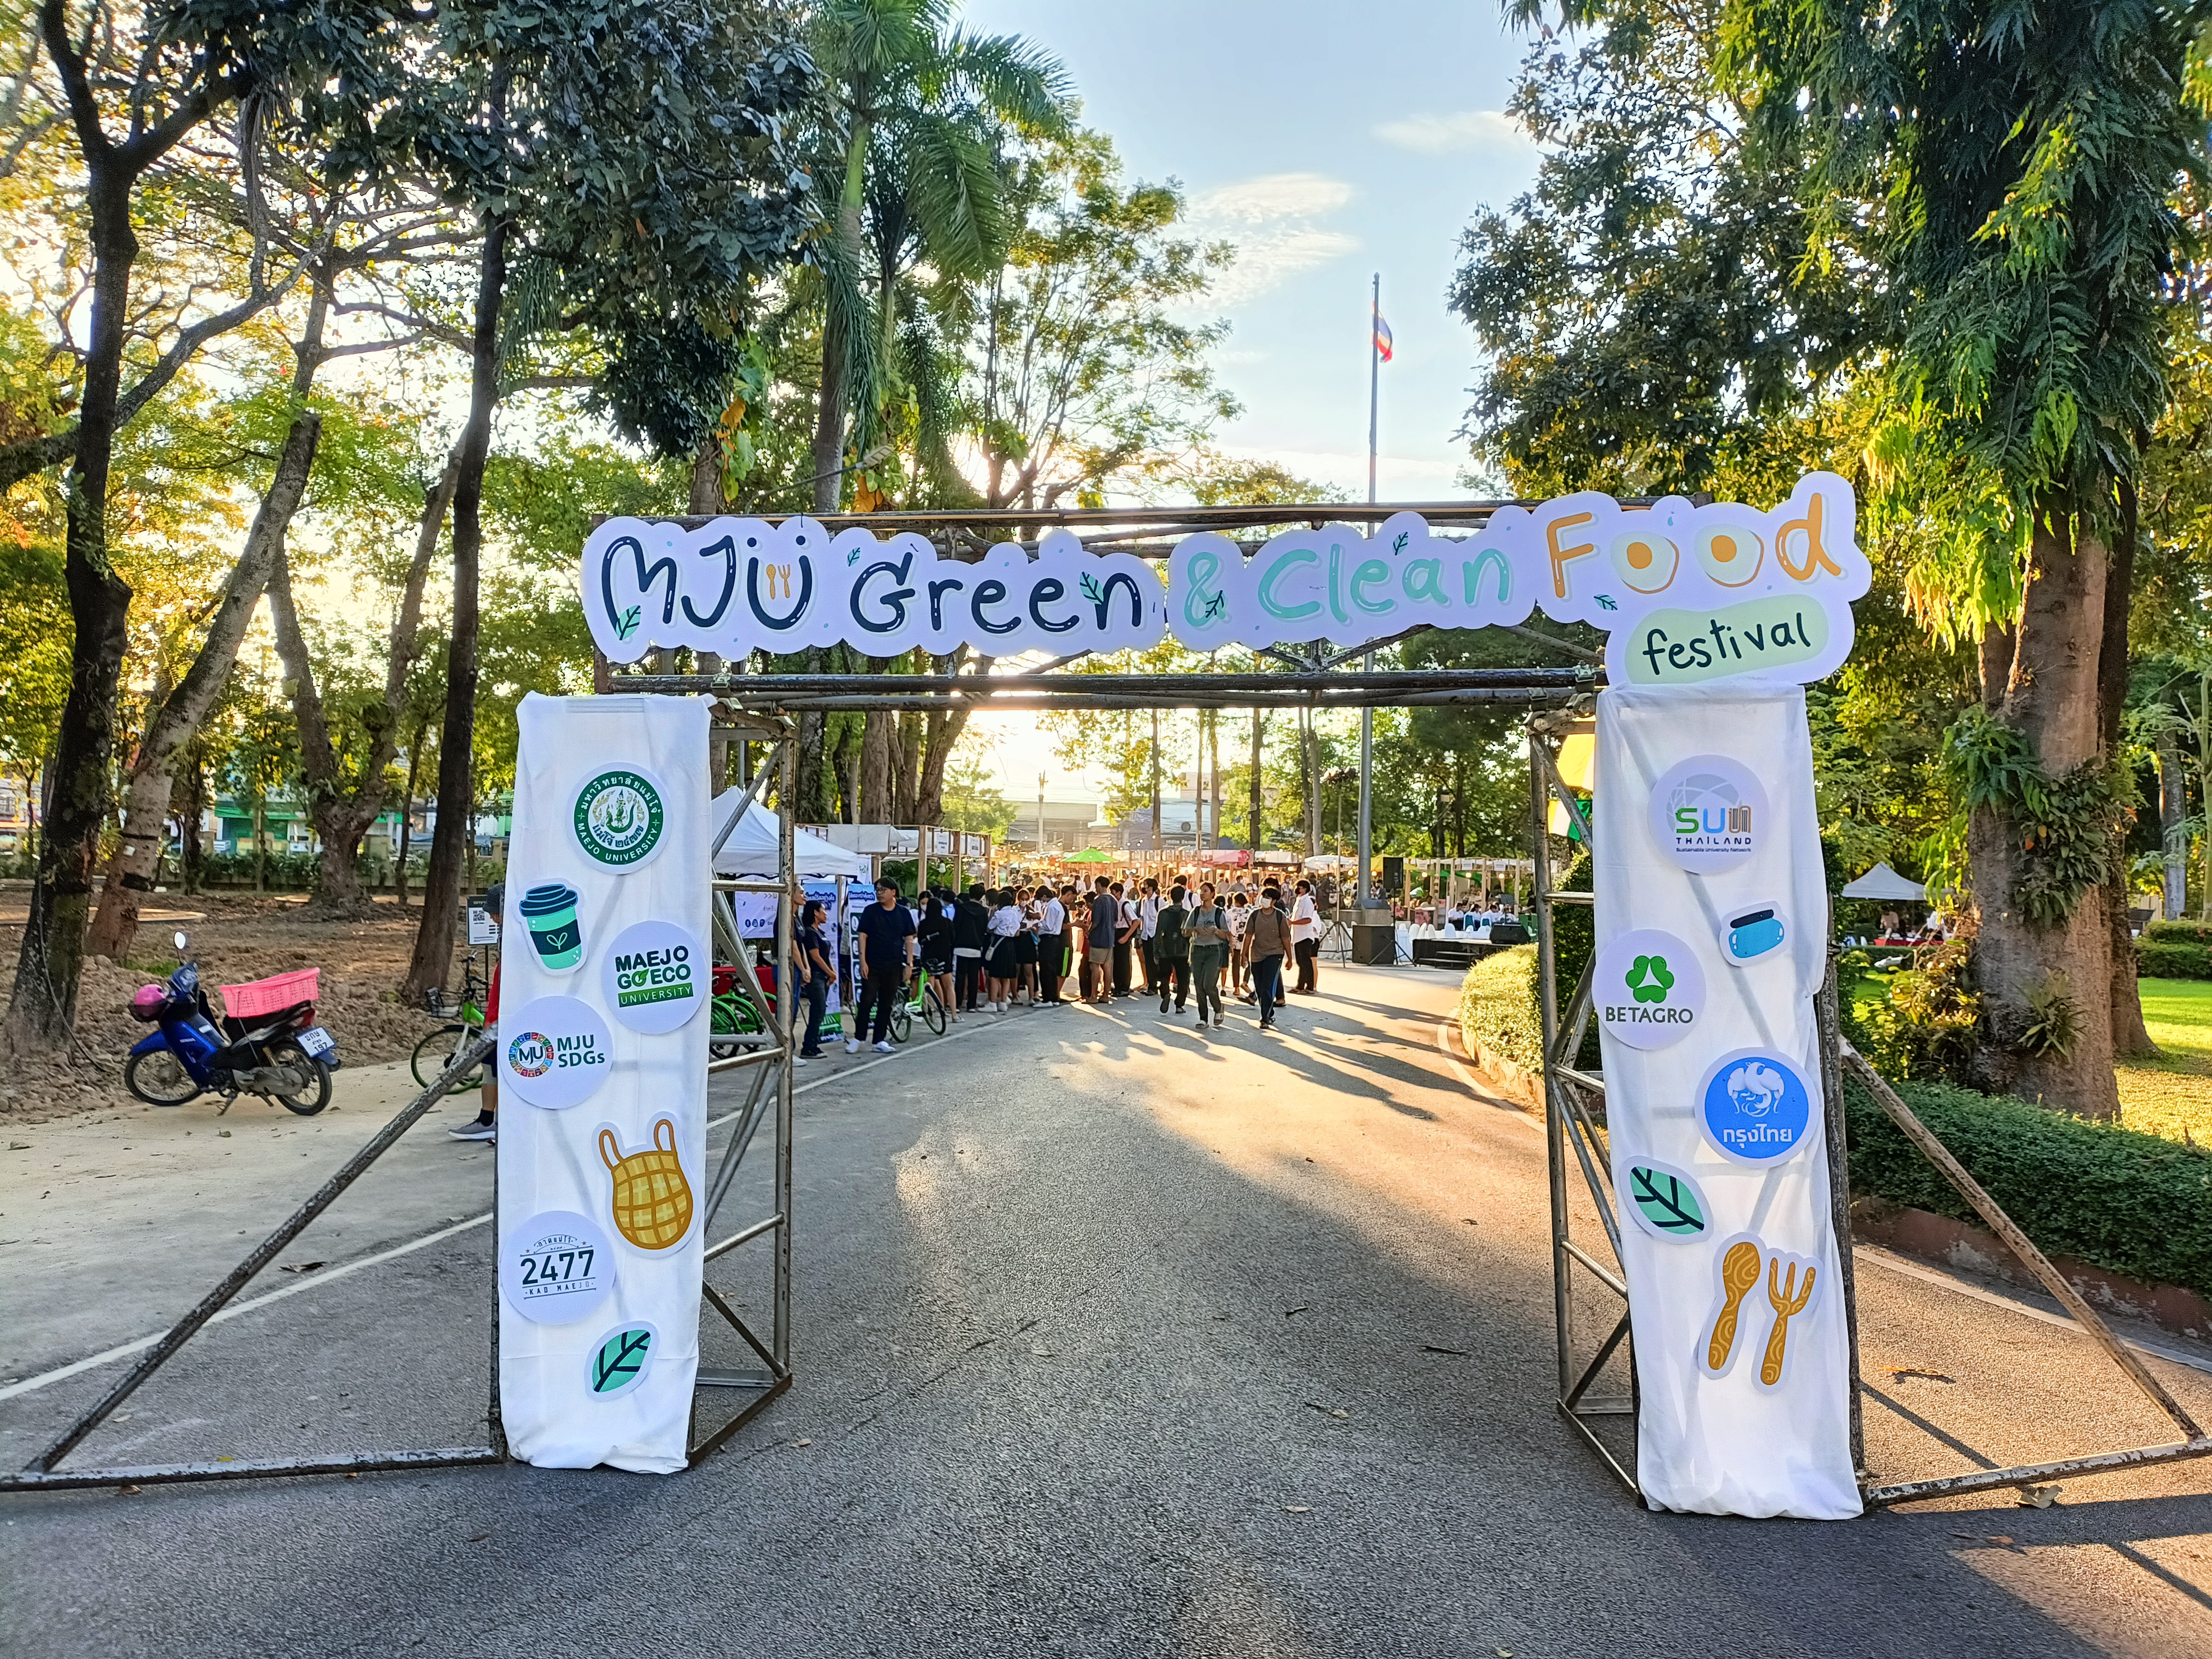 เชียงใหม่ - เริ่มแล้ว....เทศกาลอาหาร MJU Green & Clean Food Festival 2022ขับเคลื่อน Green U. สร้างสังคมน่าอยู่ ต่อยอดองค์ความรู้ด้านอาหารในทุกมิติ